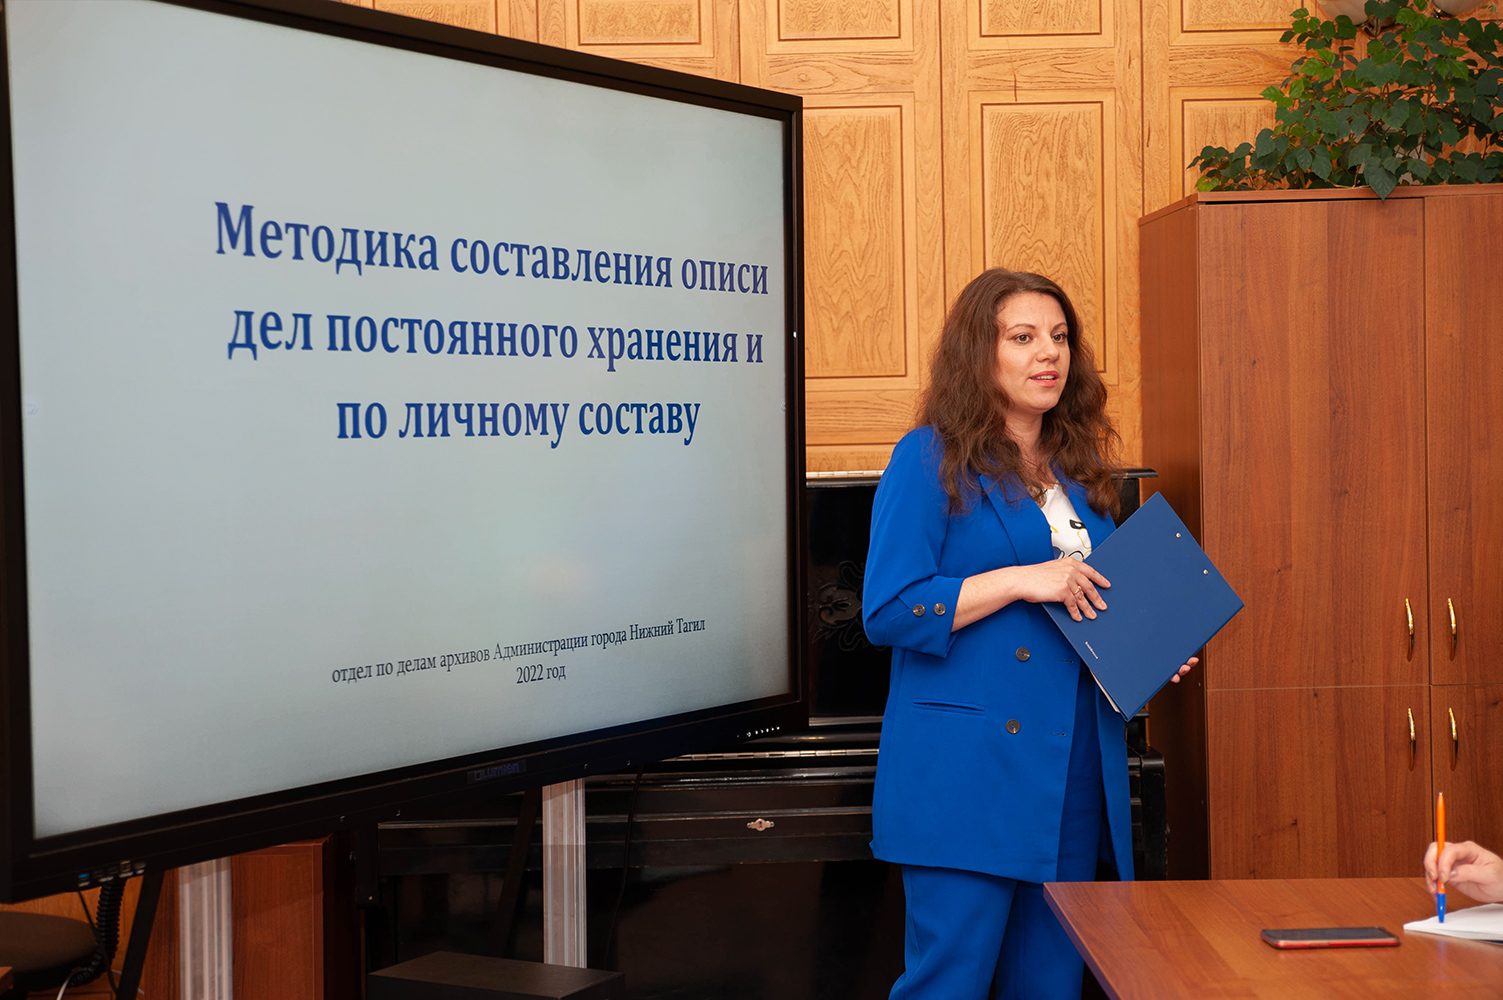 Алена Сергеевна Фалалеева, ведущий специалист отдела по делам архивов Администрации города Нижний Тагил в читально-экспозиционном зале НТГИА. 23 июня 2022 года